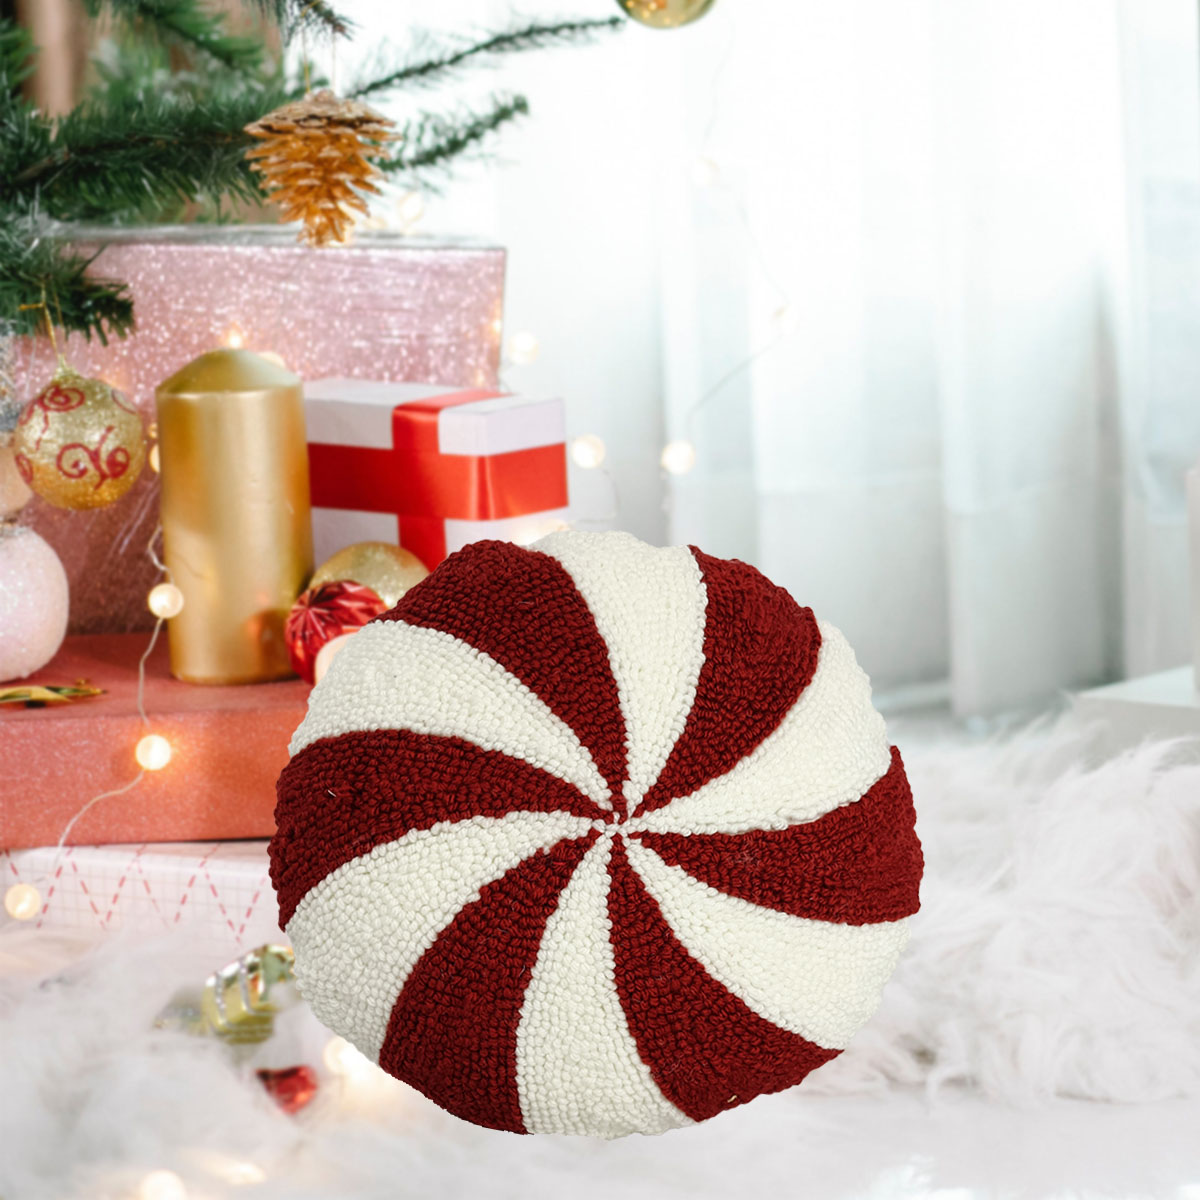 Рождественская подушка в красно-белую полоску: праздничный декор